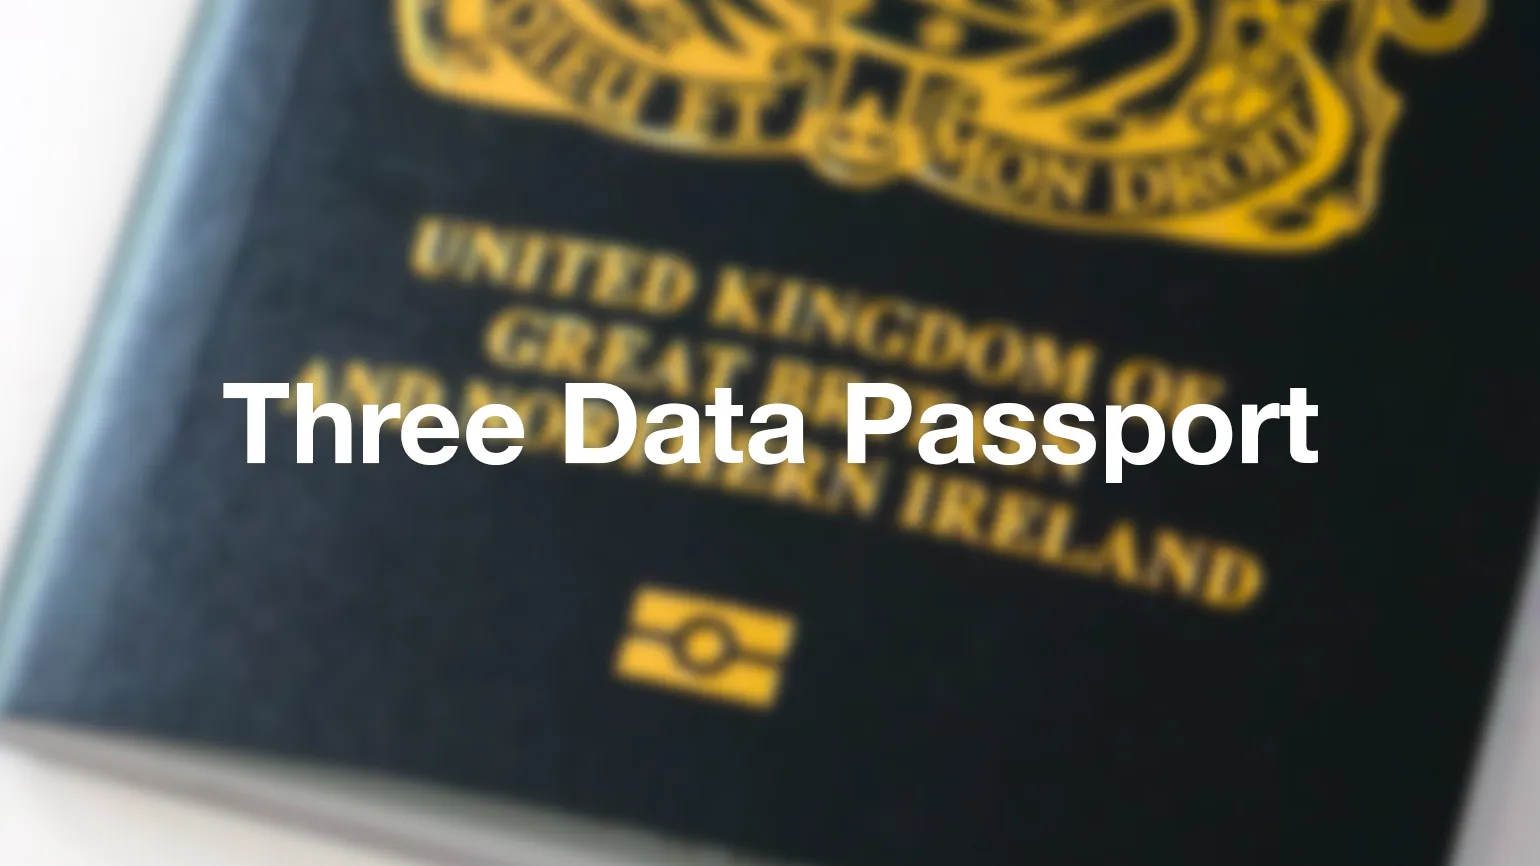 Three Data Passport - what is it?